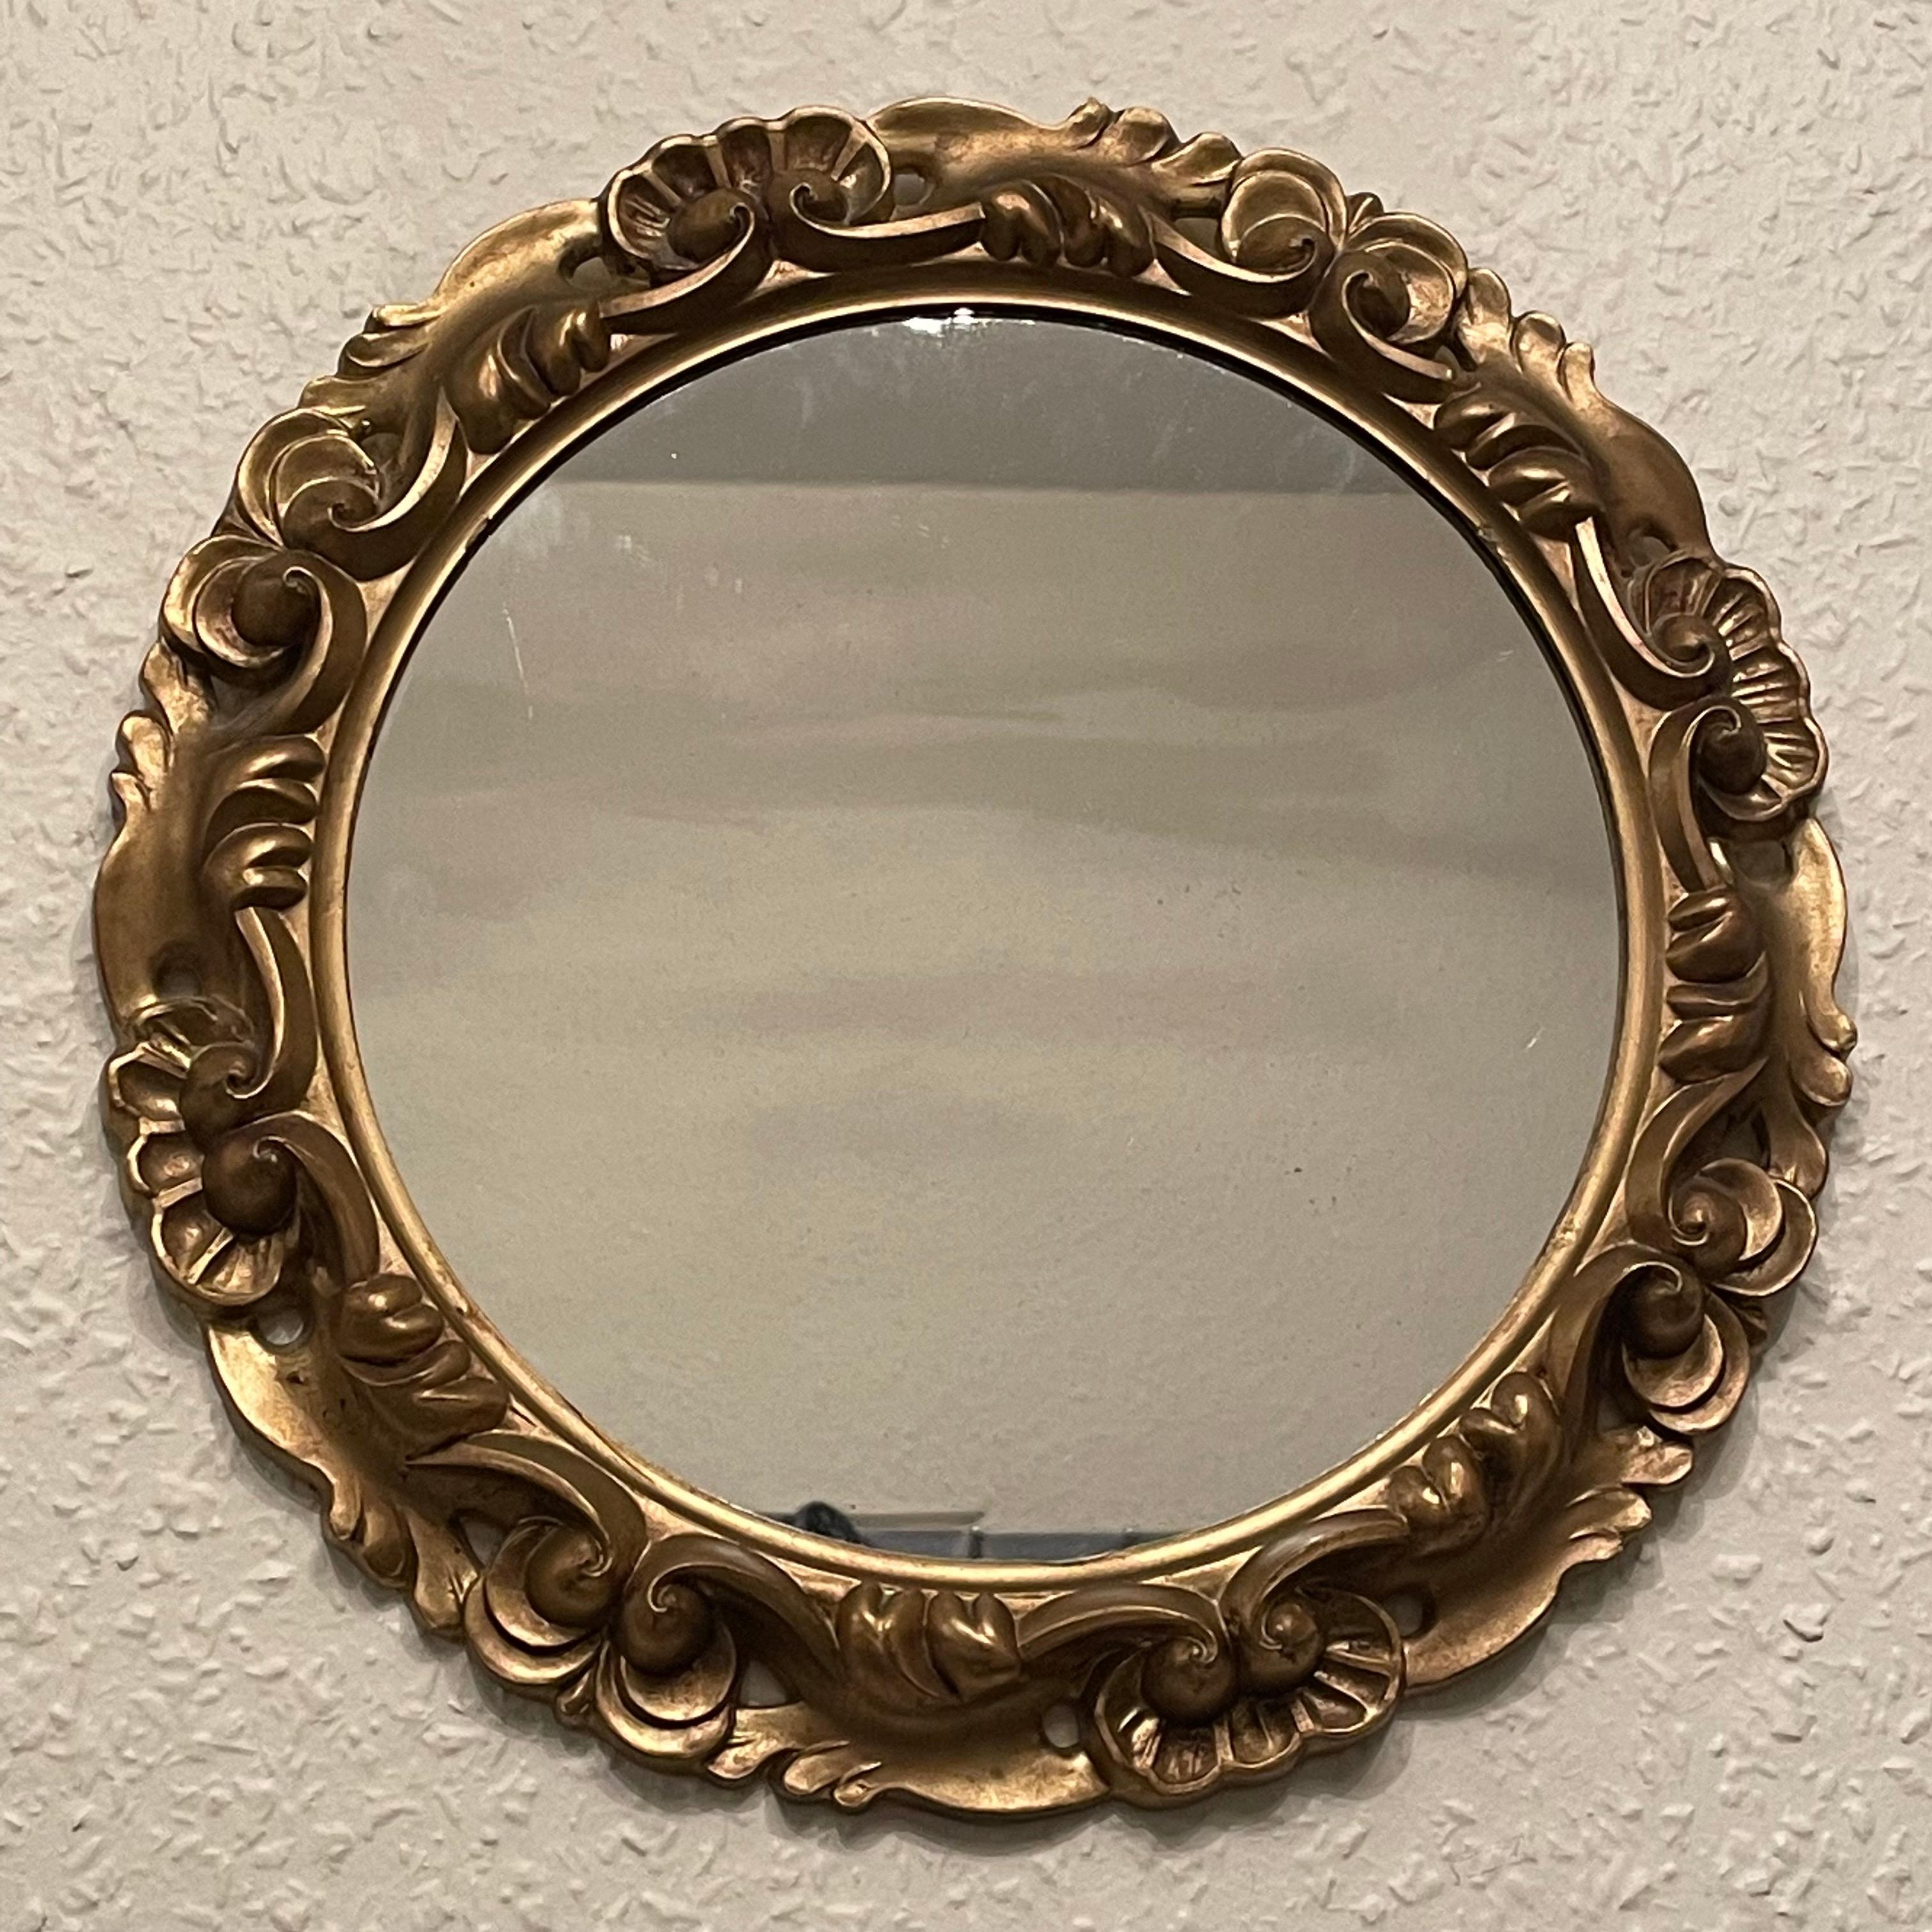 Un magnifique miroir en faïence. En résine dorée. Il mesure environ 11,75 pouces de diamètre, le miroir seul mesure environ 8,5 pouces de diamètre. Il se tient à environ 1